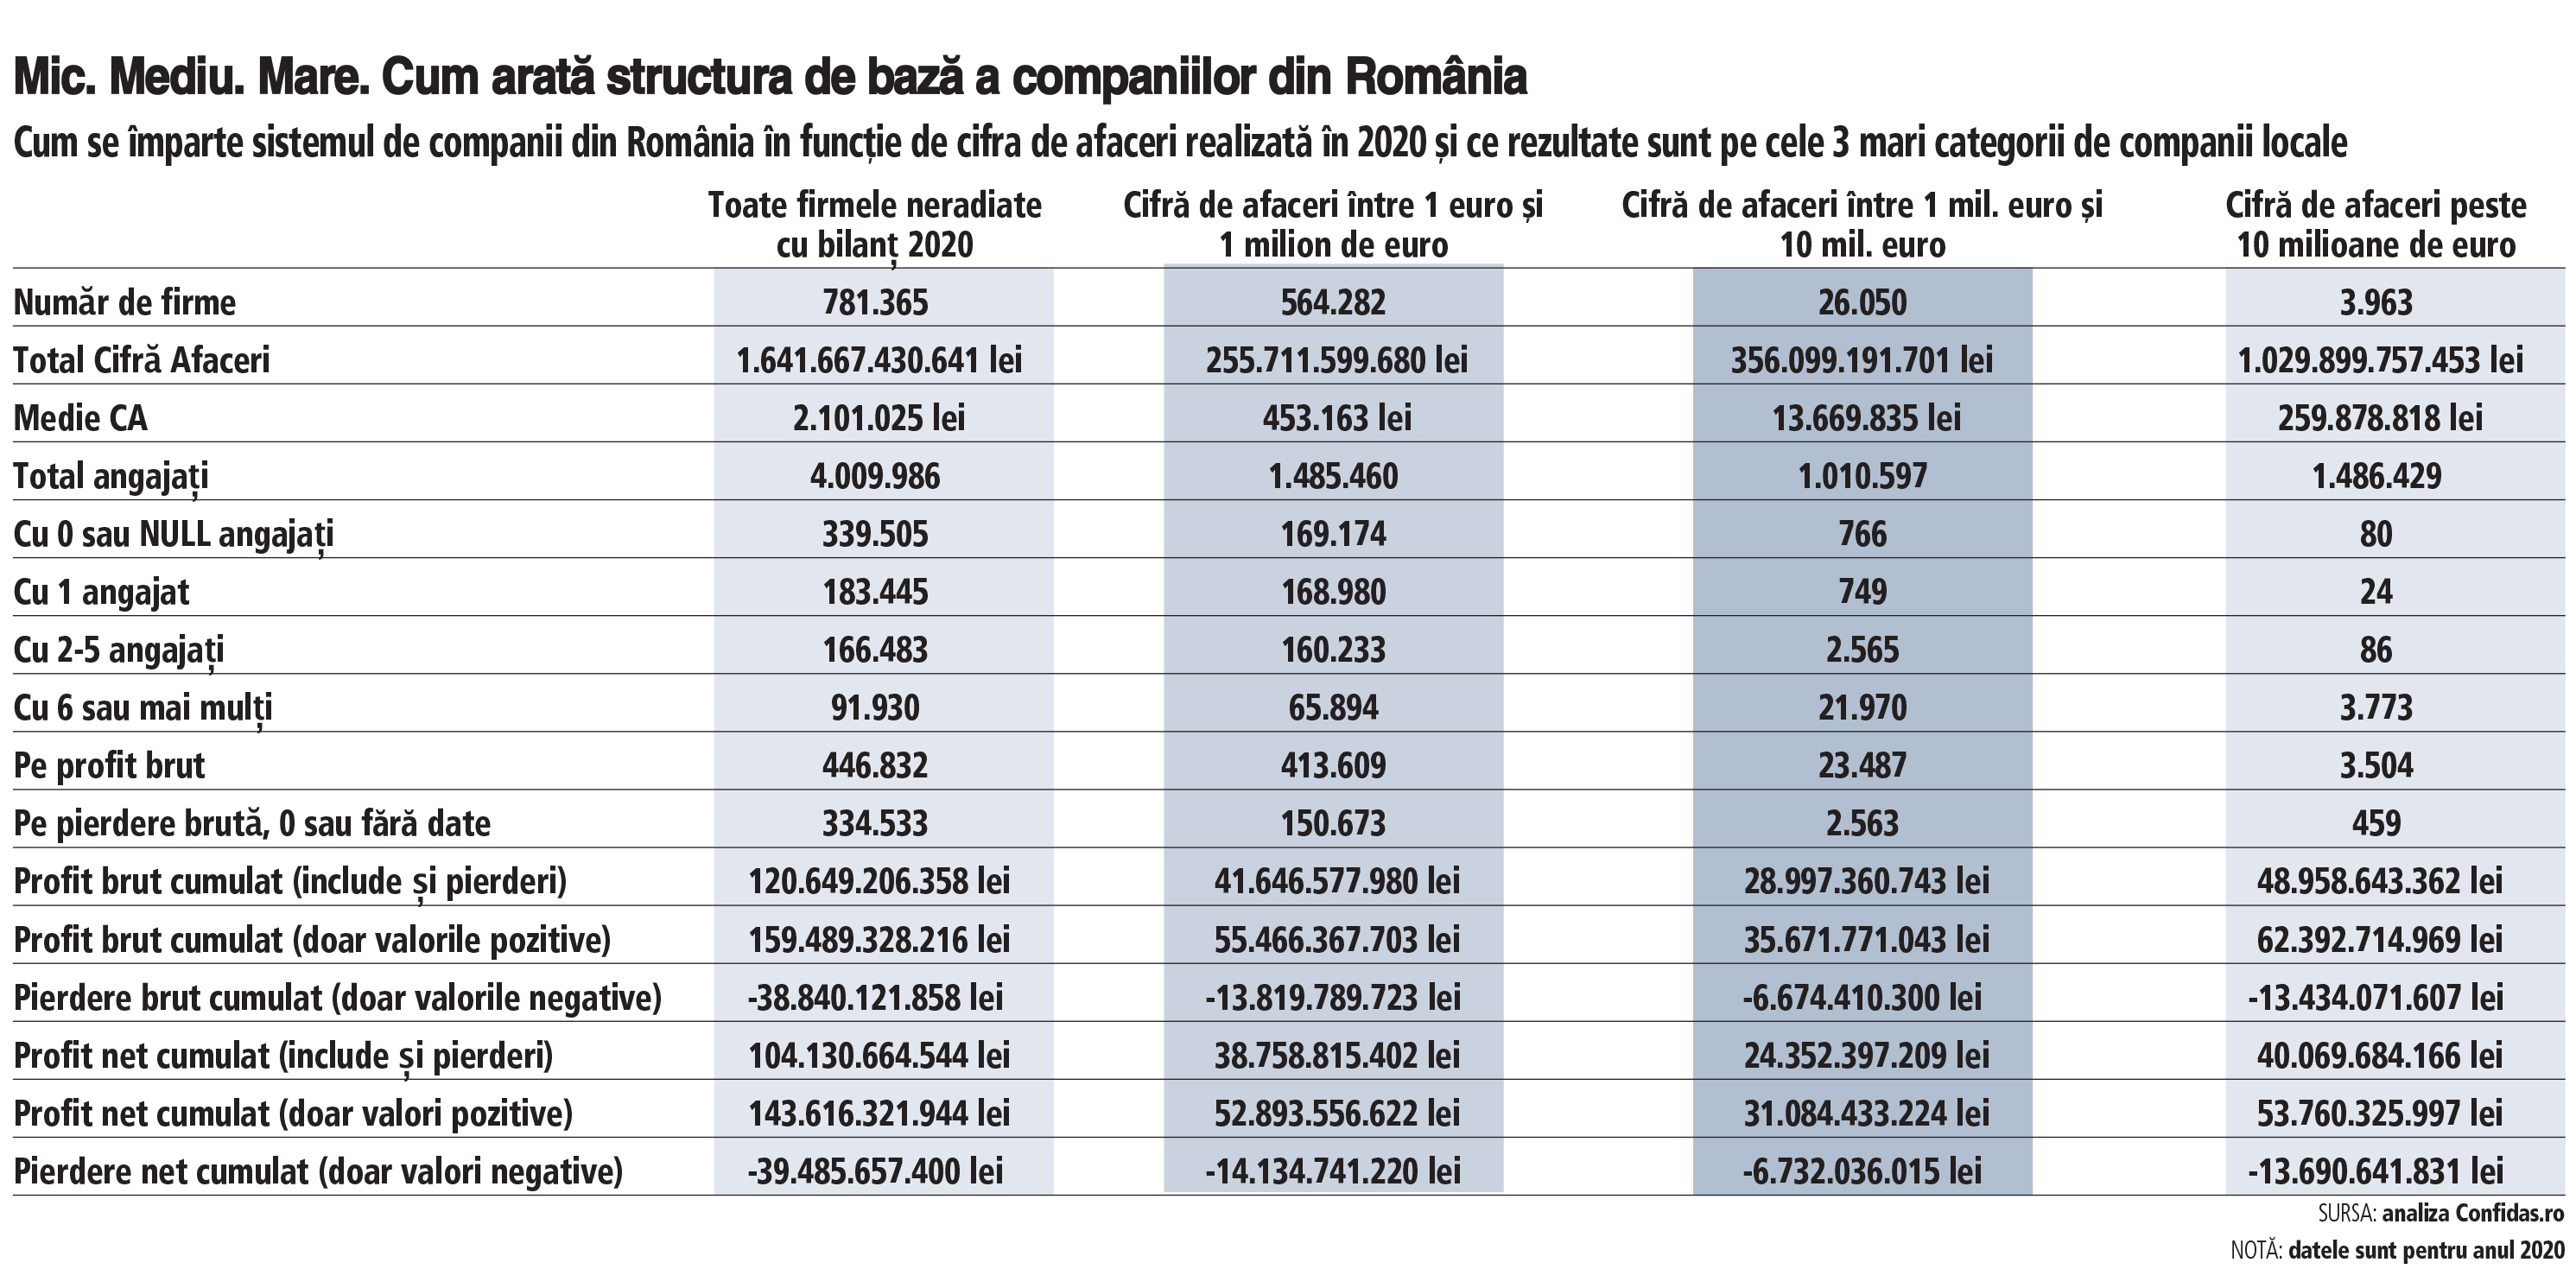 Mic. Mediu. Mare. Cât cântăreşte fiecare companie în businessul românesc? Micii antreprenori generează acelaşi profit anual ca şi firmele mari, dar cu o cifră de afaceri de patru ori mai mică